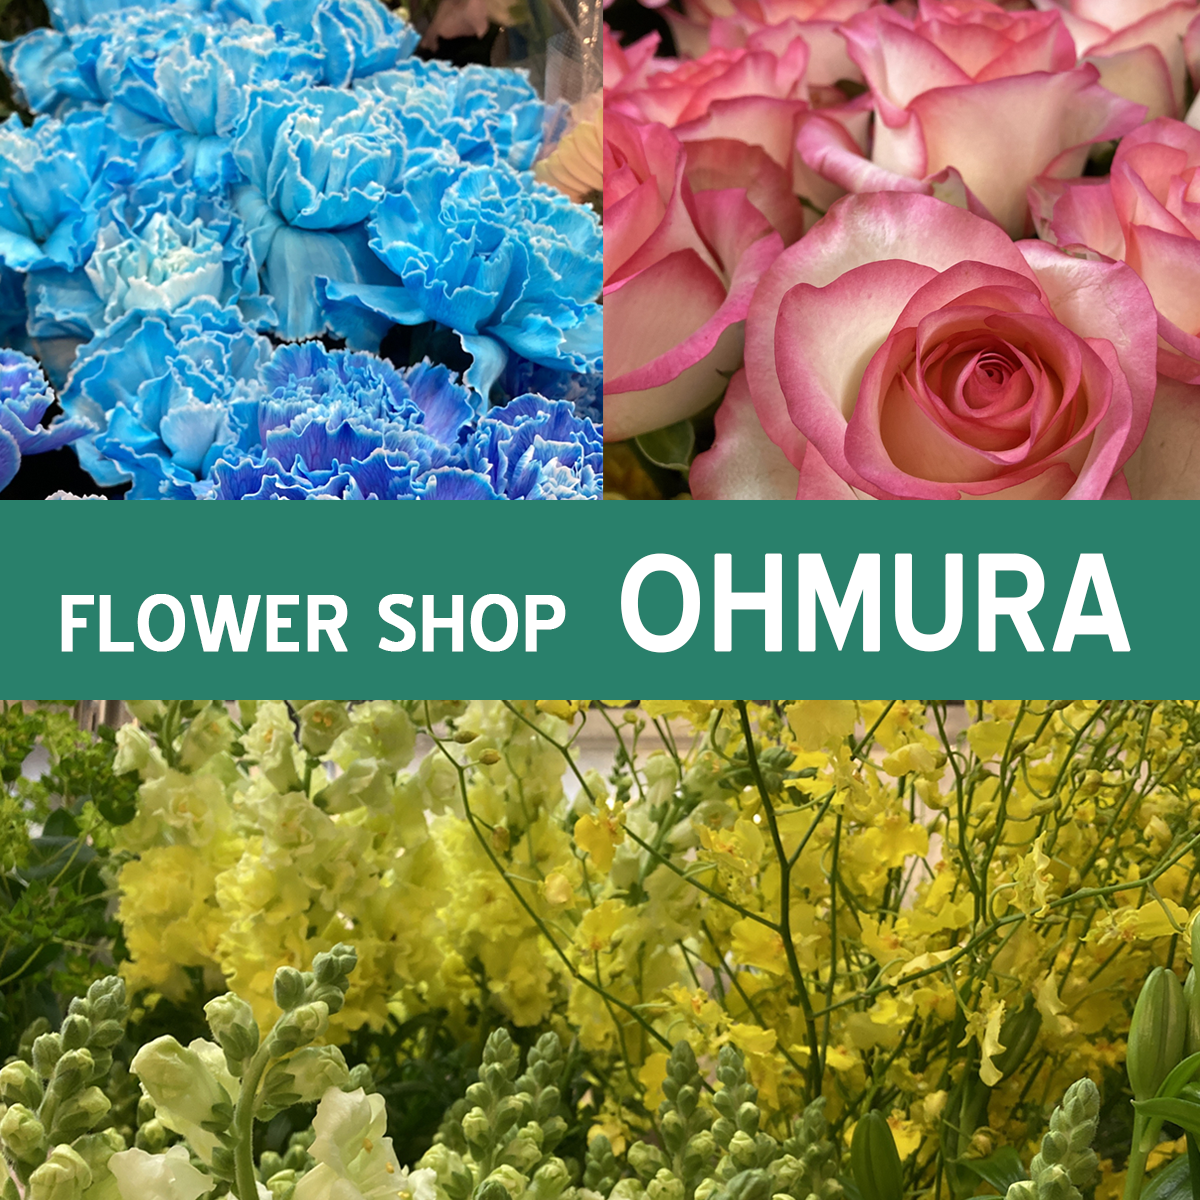 FLOWER SHOP OHMURA